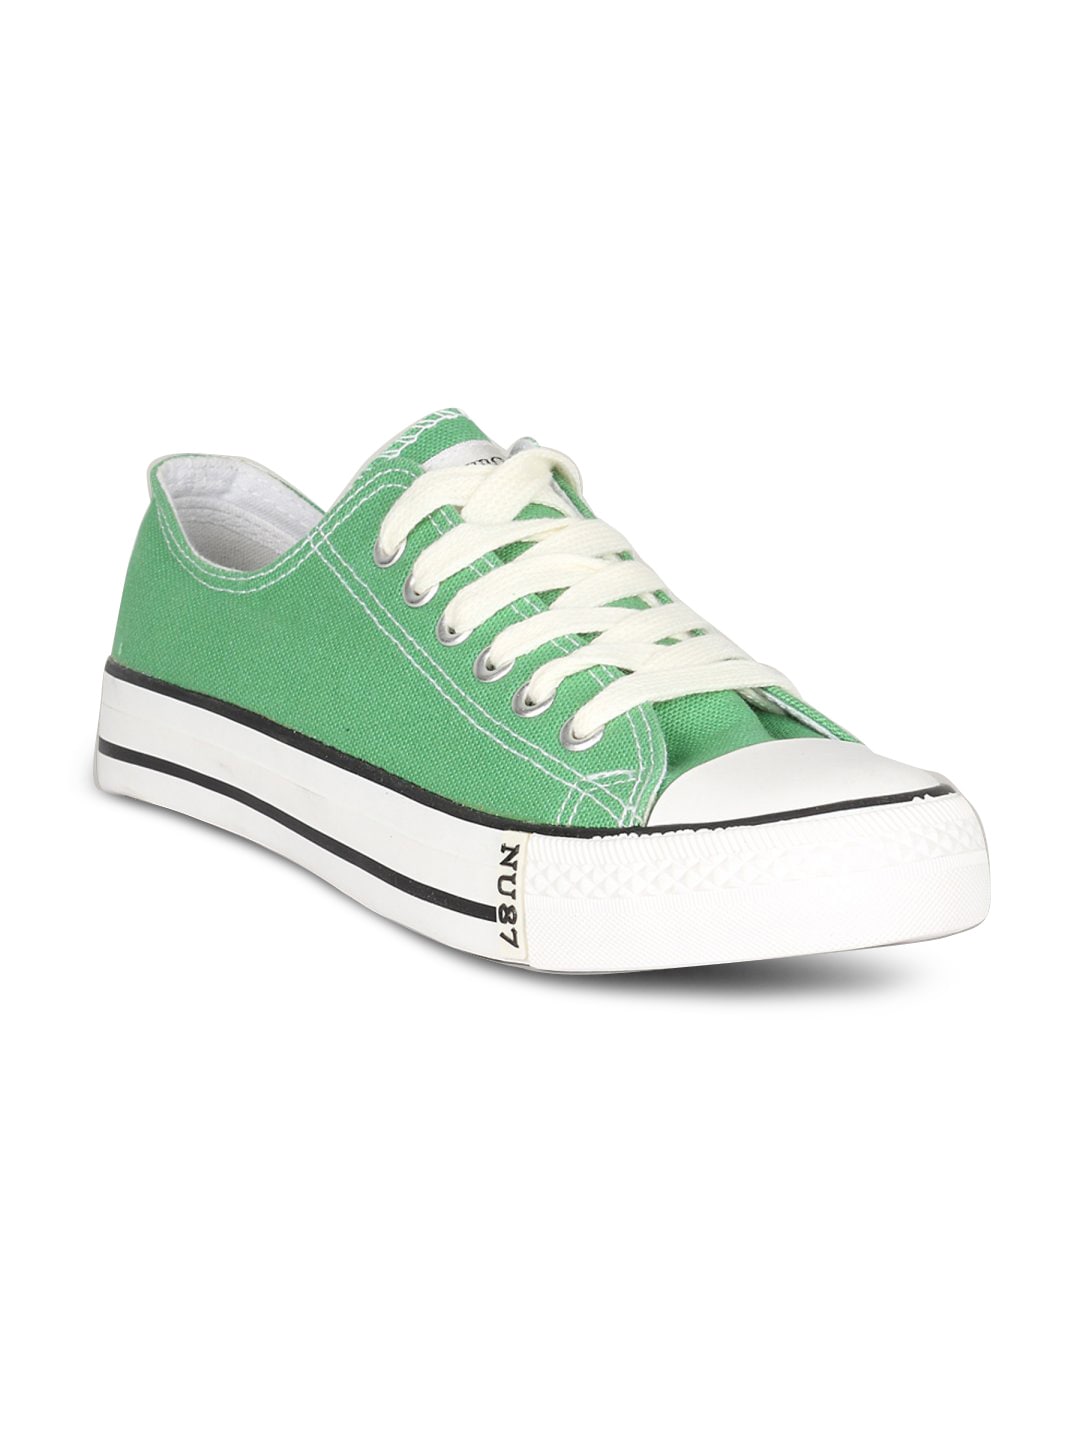 Numero Uno Men's Green Shoe